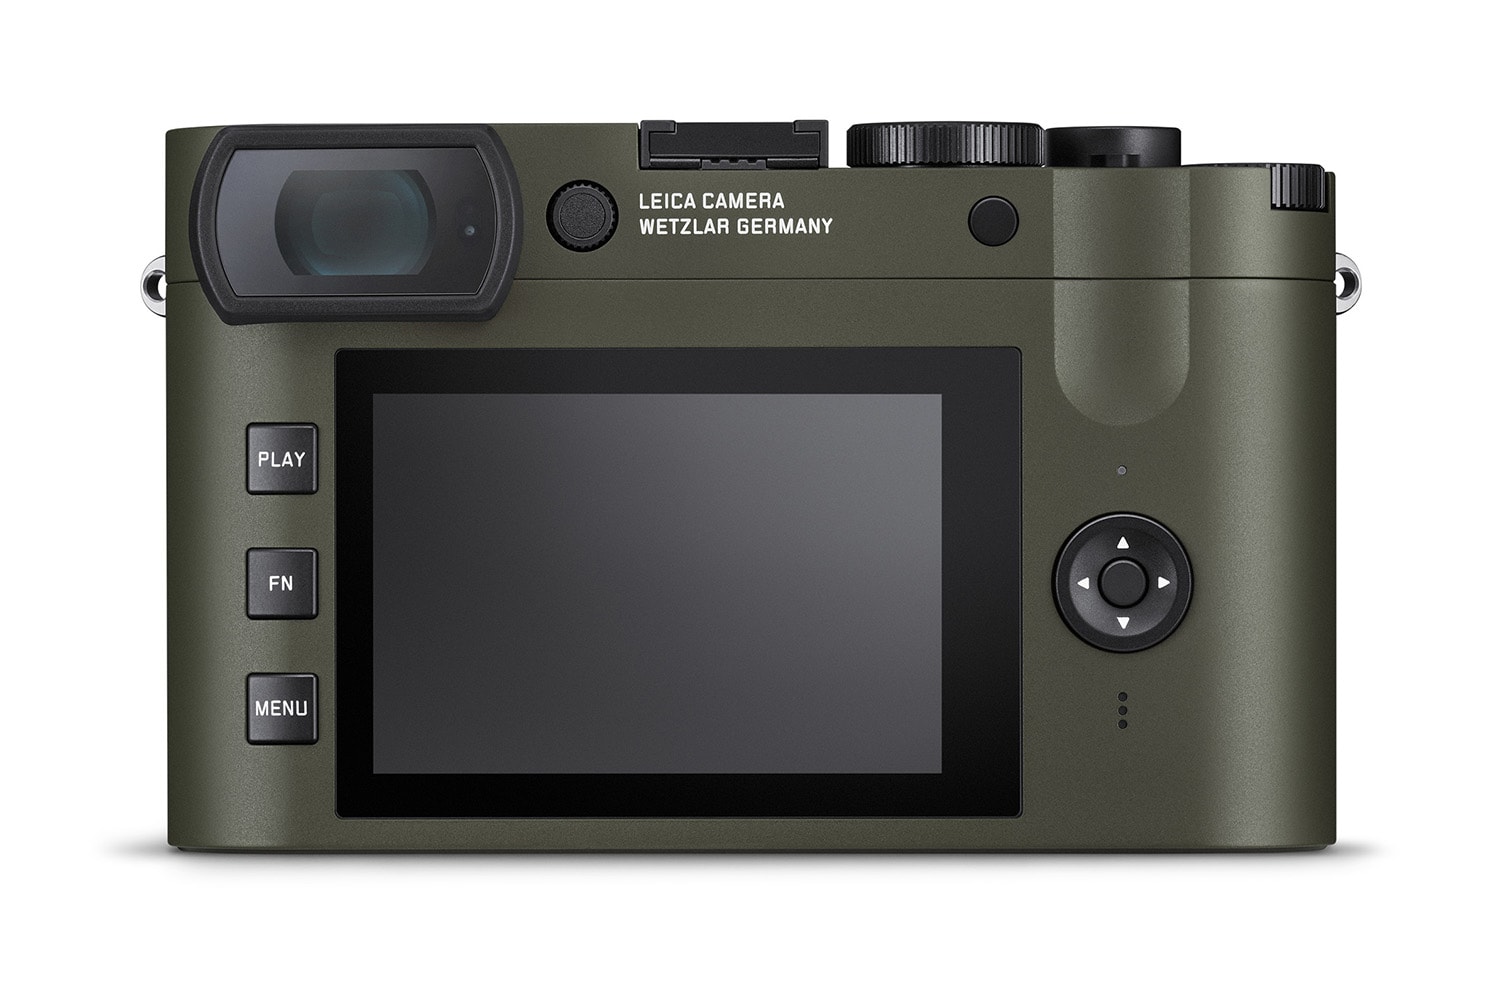 Leica 全新 Q2「记者版」相机正式发售